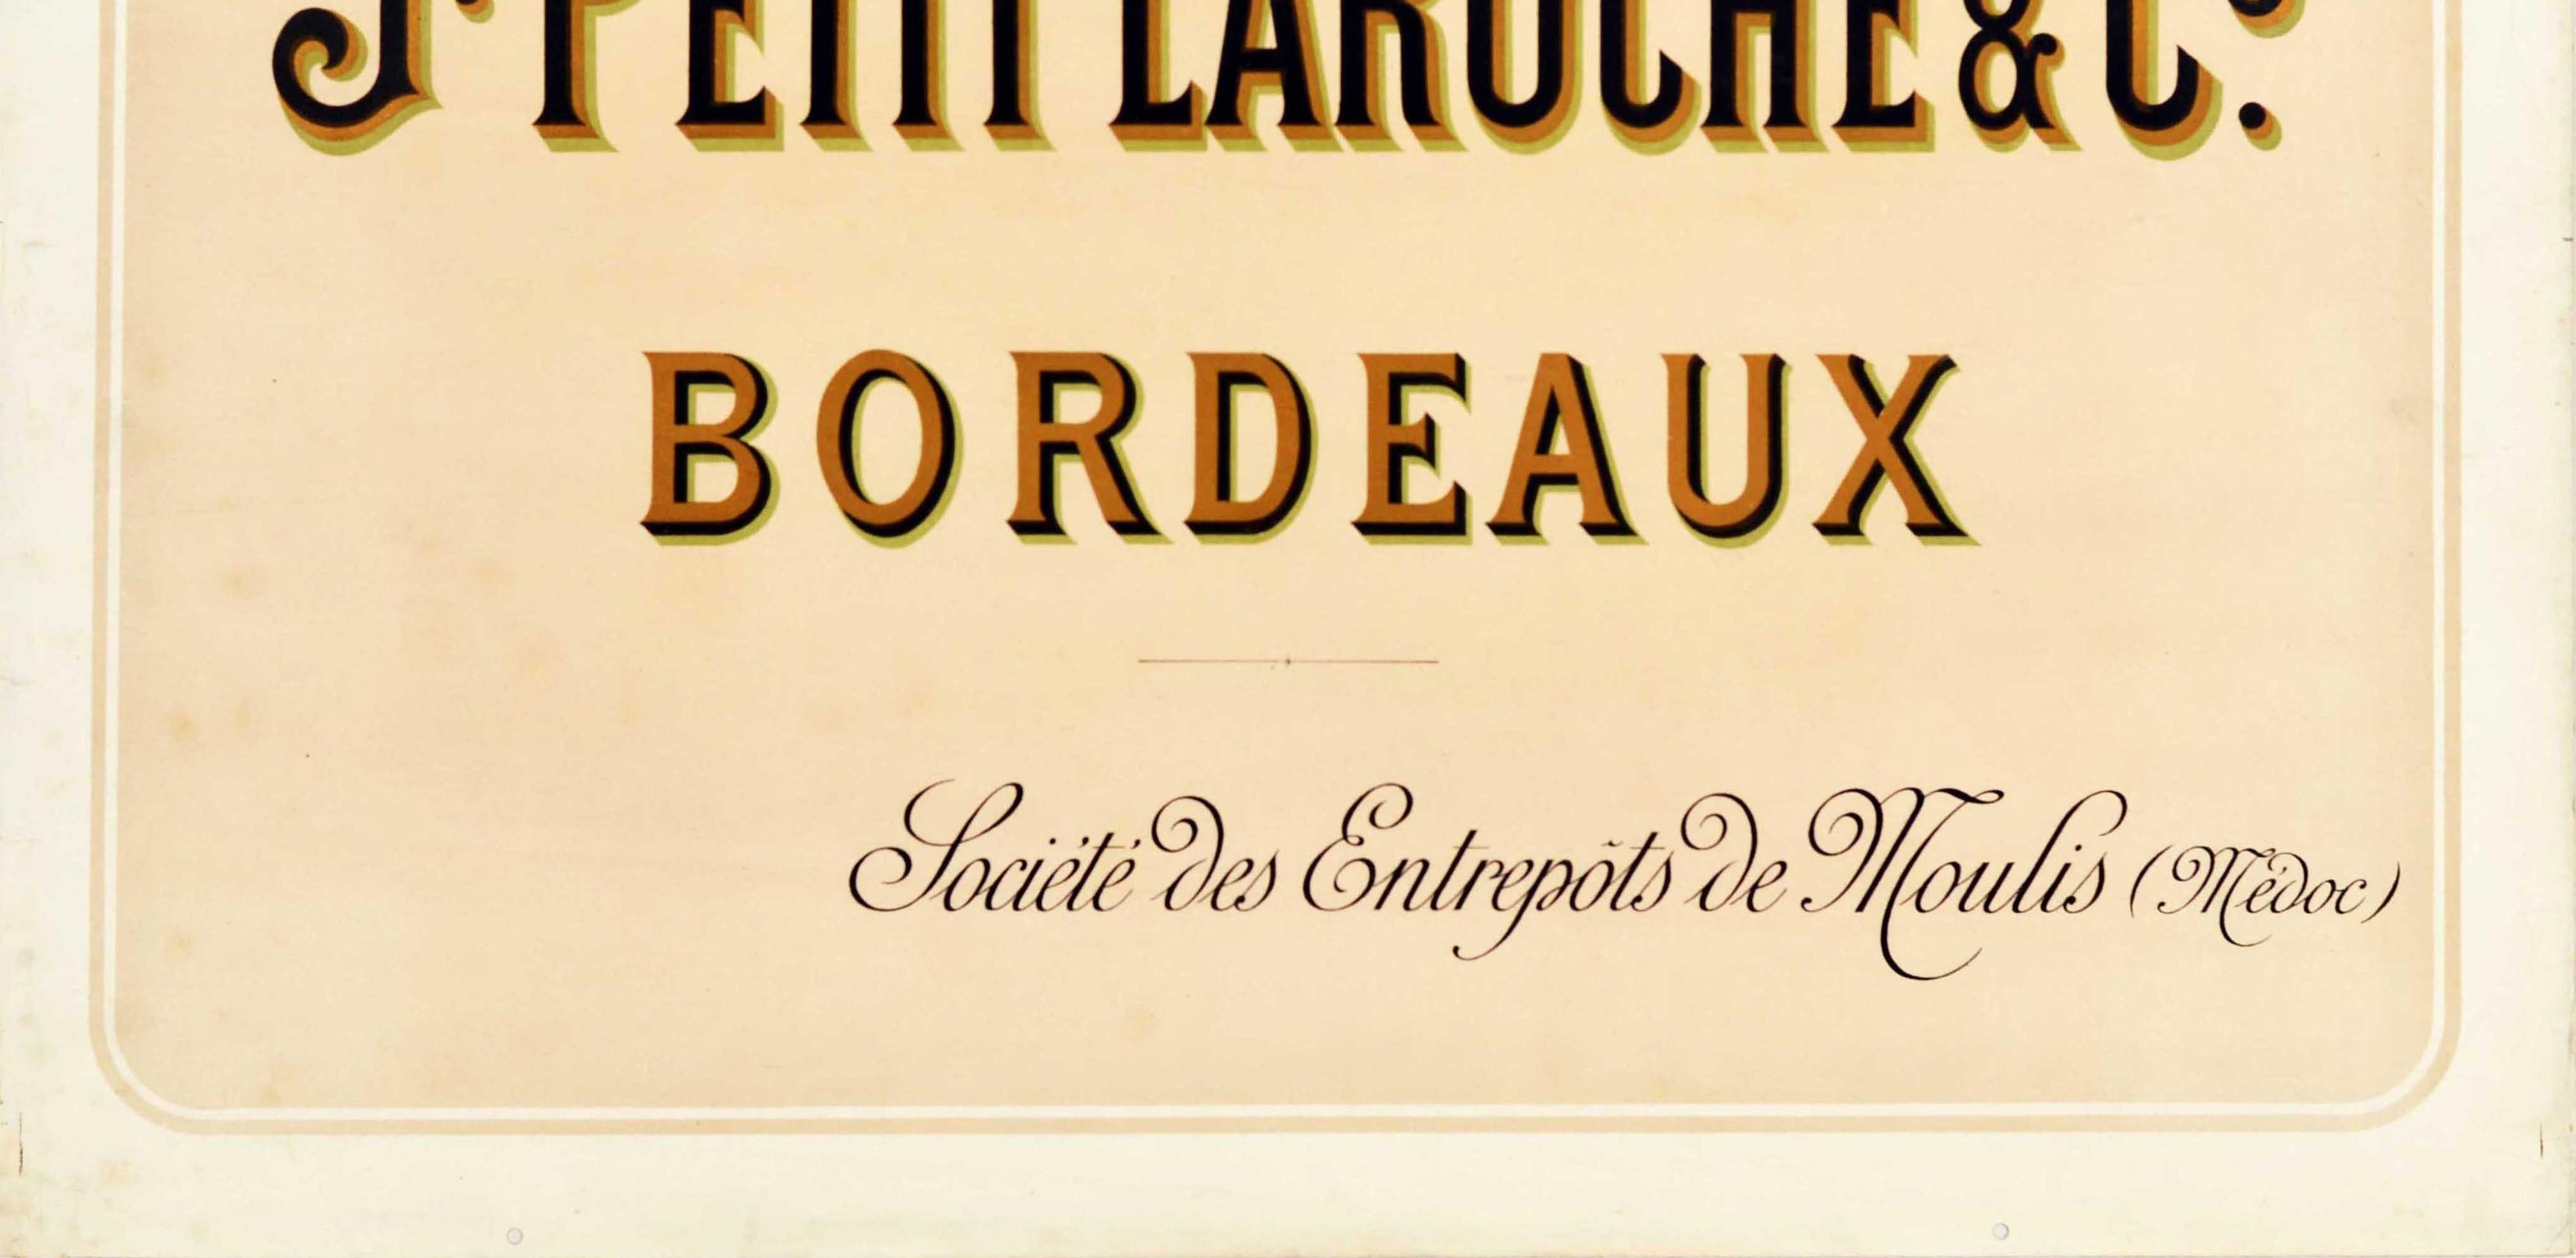 Originales antikes Getränke-Werbeplakat für J. Petit Laroche & Co Bordeaux Societe des Entrepots de Moulis Medoc mit dem Titeltext der Weinhersteller in Fettdruck und dem restlichen Text in stilisierter Schrift darunter. Horizontal. Guter Zustand,